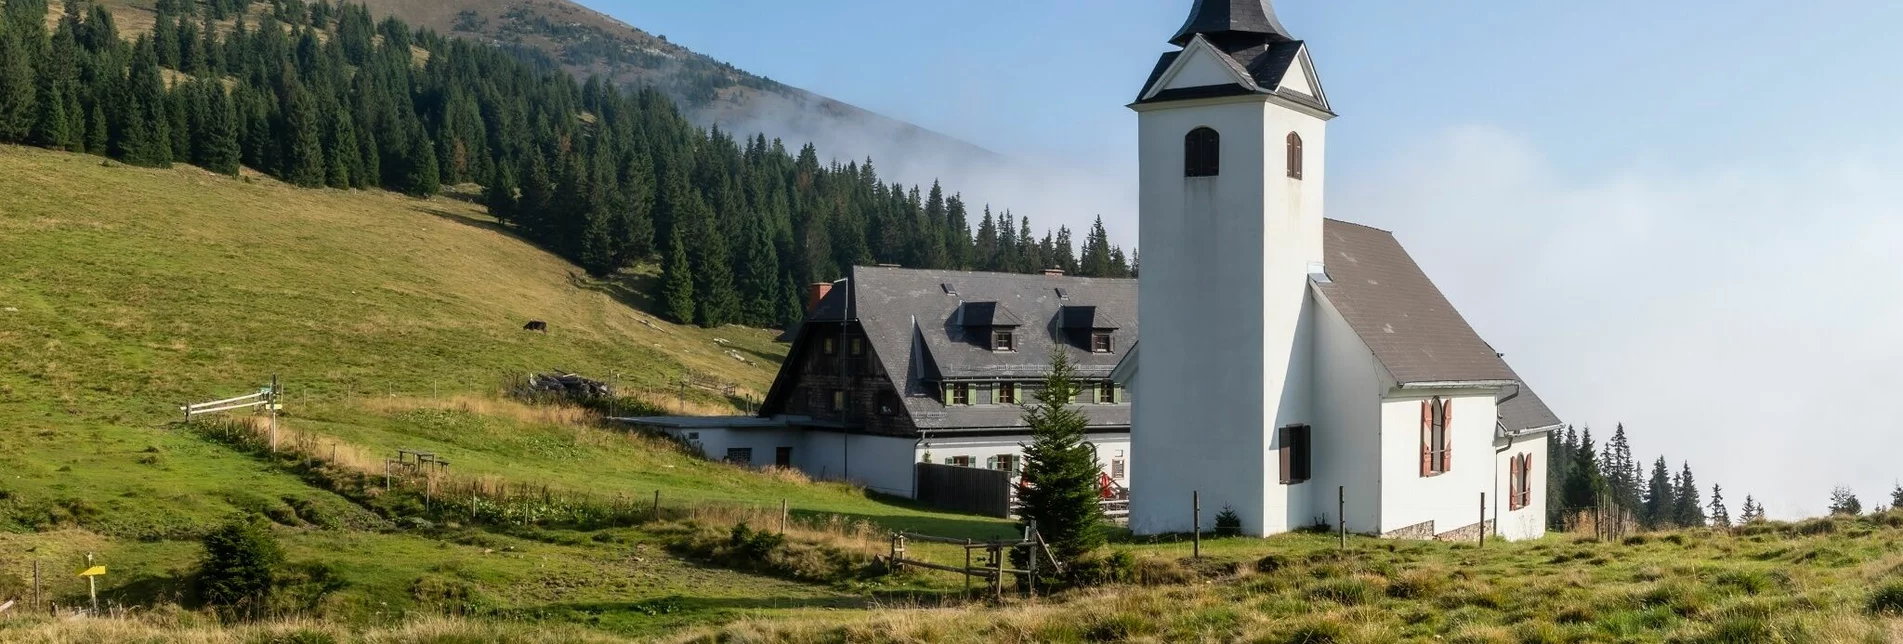 Hiking route From Krautwasch to the Gleinalm mountain hut - Touren-Impression #1 | © Region Graz